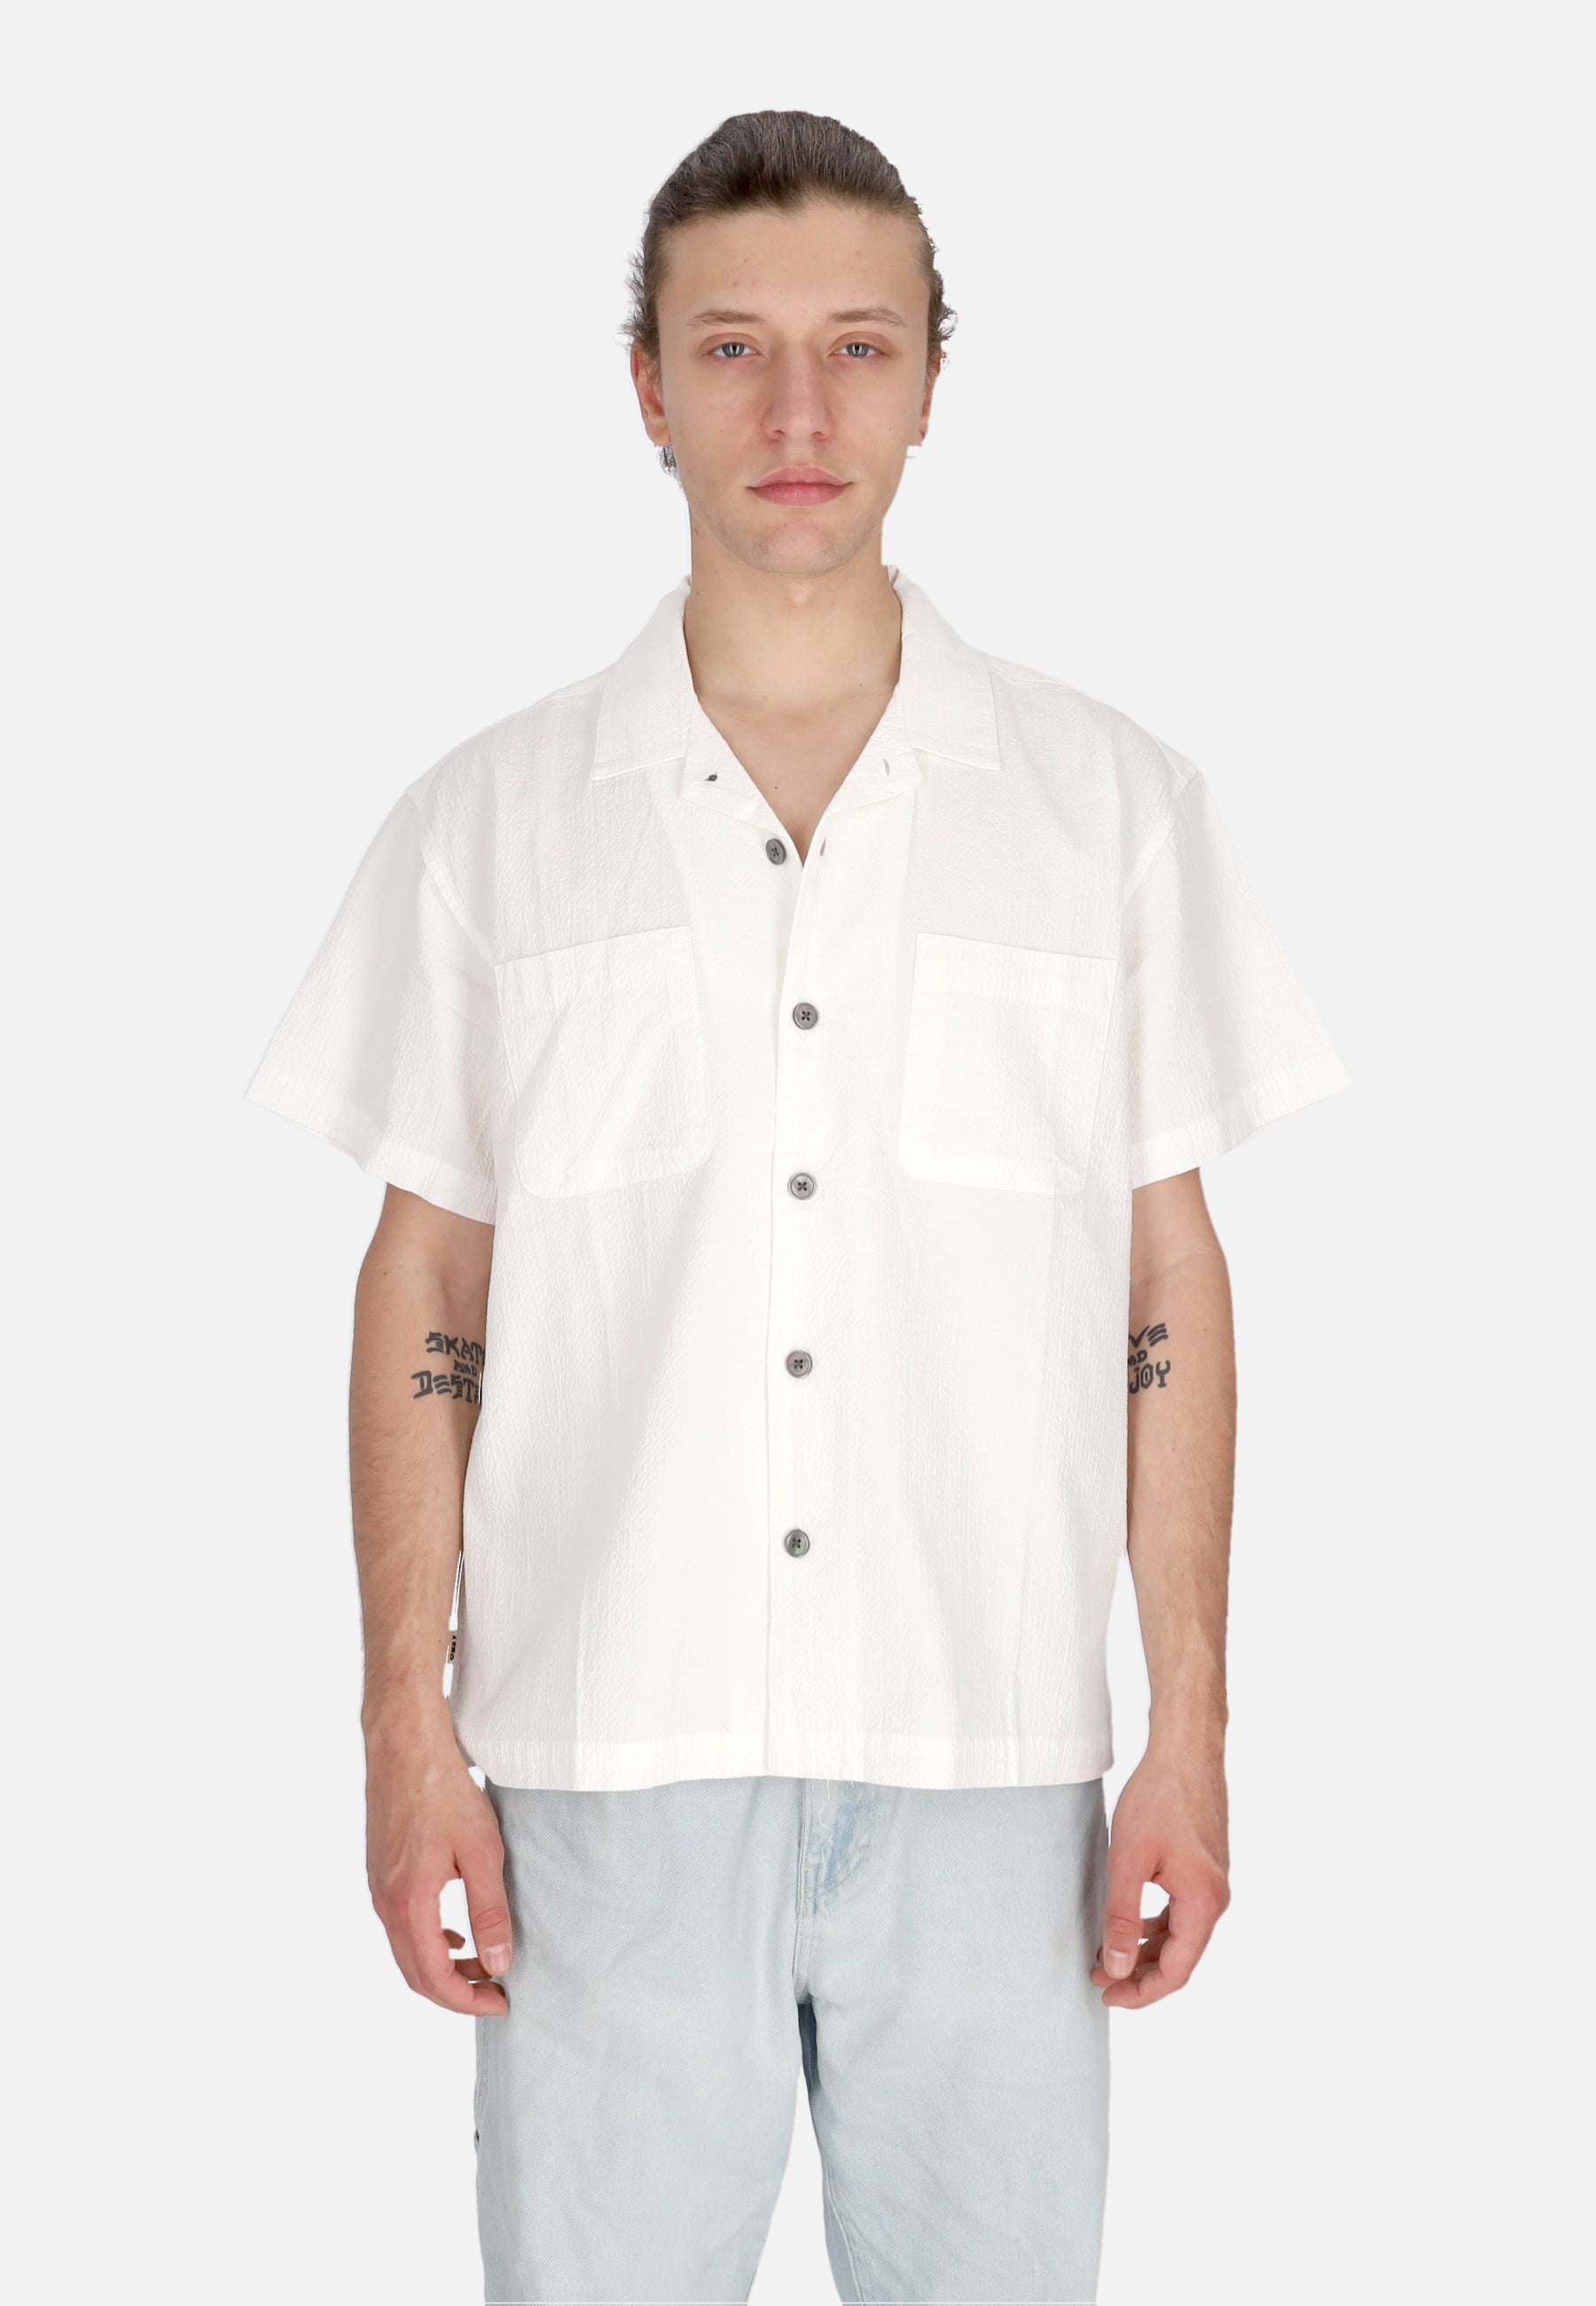 Camicia Manica Corta Uomo Sunrise Woven Shirt White 181210404